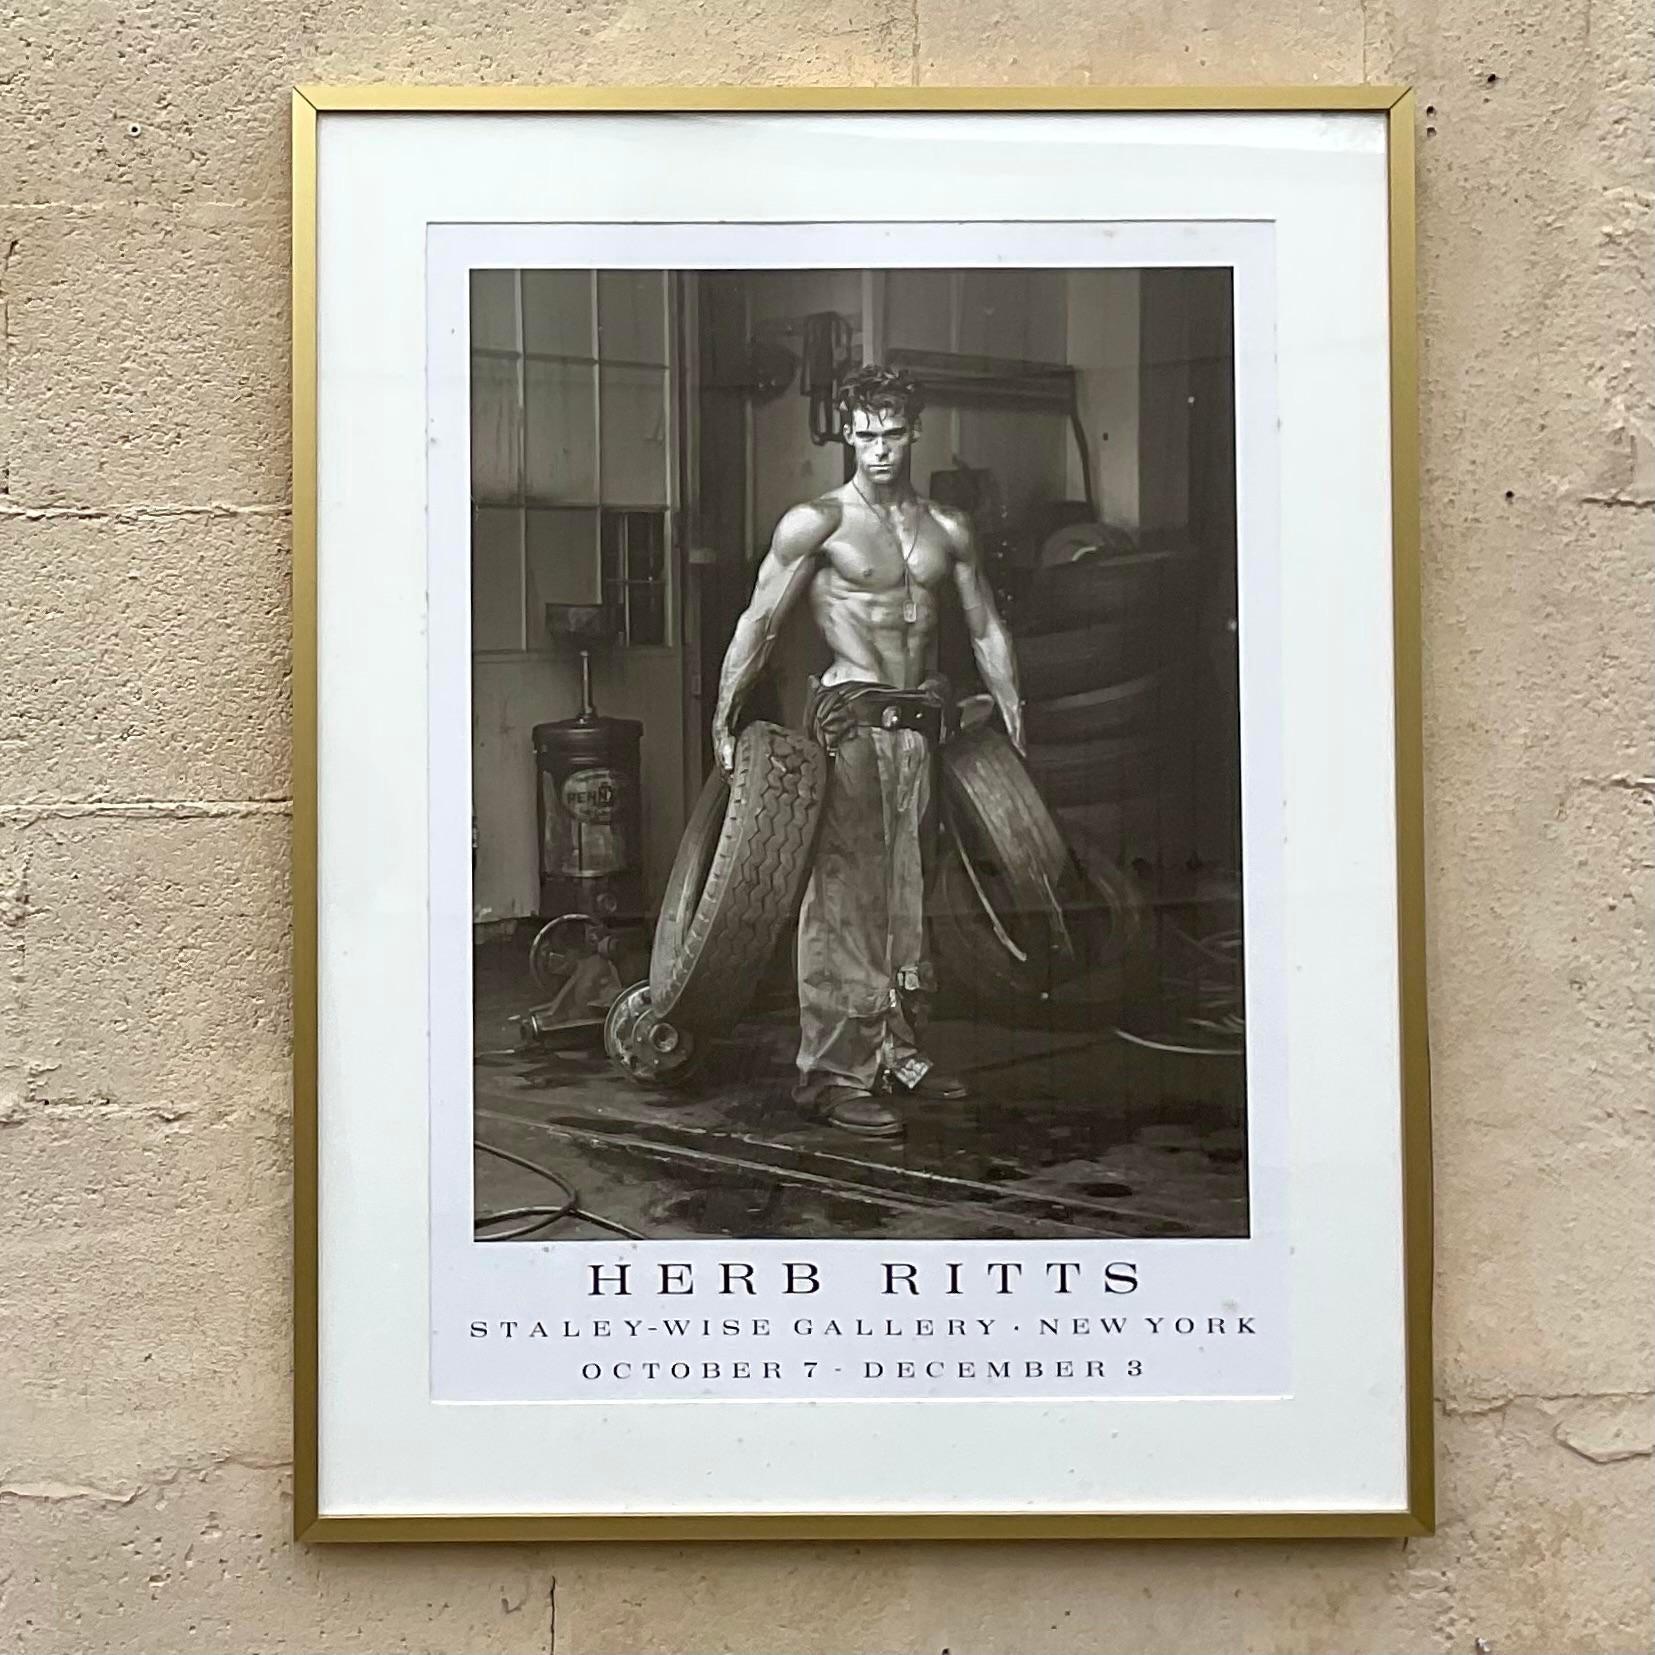 Un fabuleux poster Boho vintage. Affiche originale de Herb Ritts provenant de son exposition à la Staley Wise Gallery à New York. Acquis auprès d'une succession de Fort Lauderdale. 